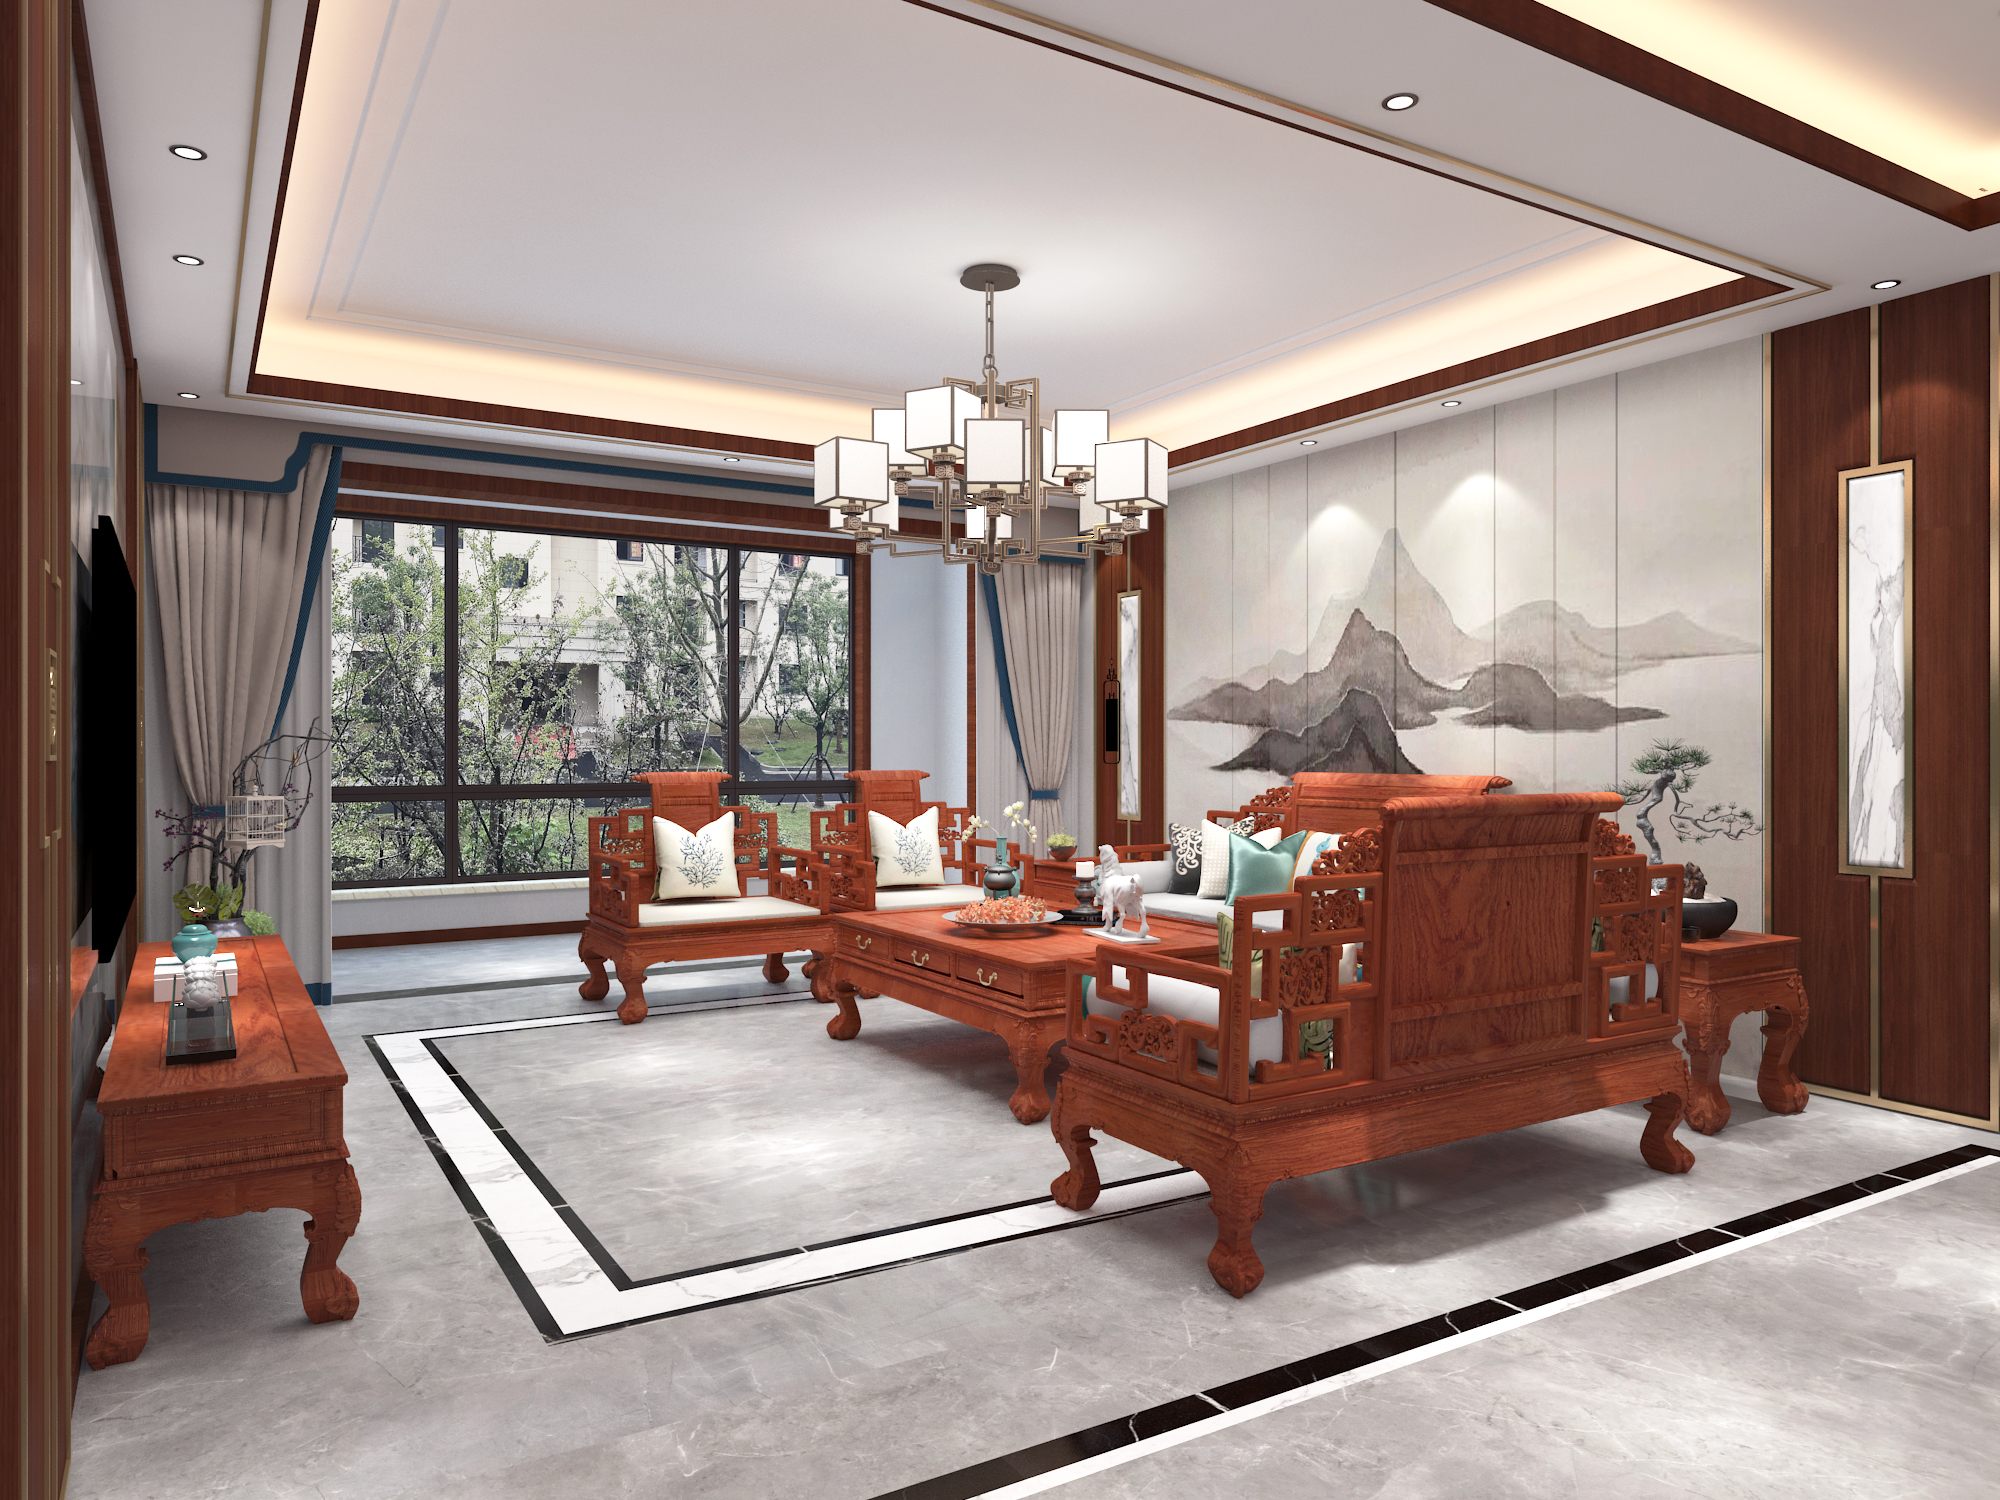 中式红木家具客厅效果图大全 – 设计本装修效果图